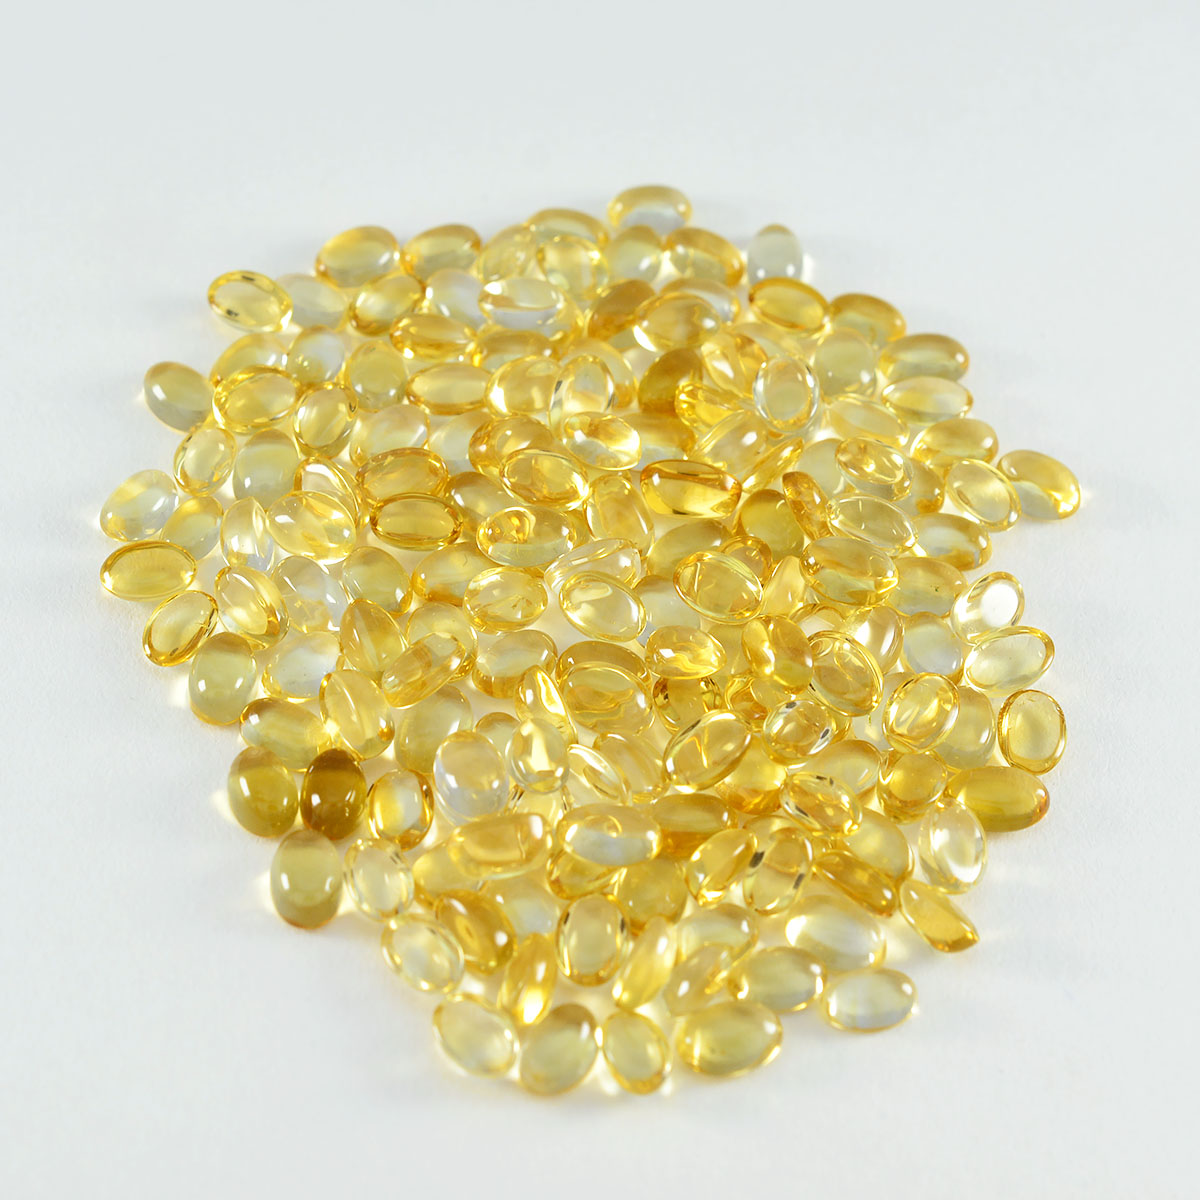 riyogems 1 pz cabochon di citrino giallo 3x5 mm di forma ovale gemme sfuse di bella qualità